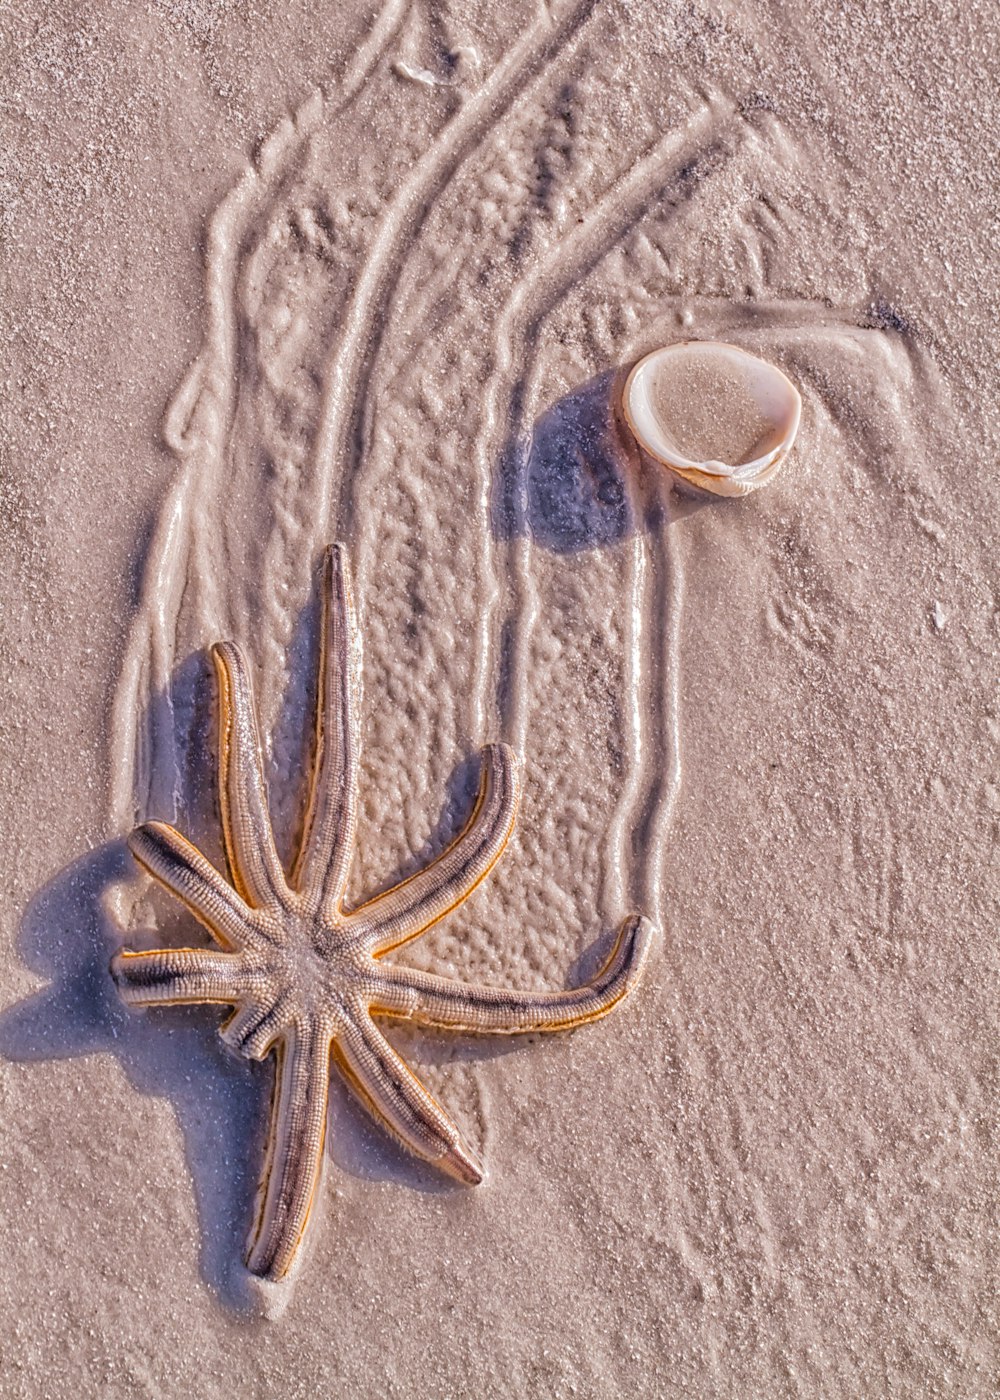 Una stella marina su una spiaggia sabbiosa accanto a una conchiglia